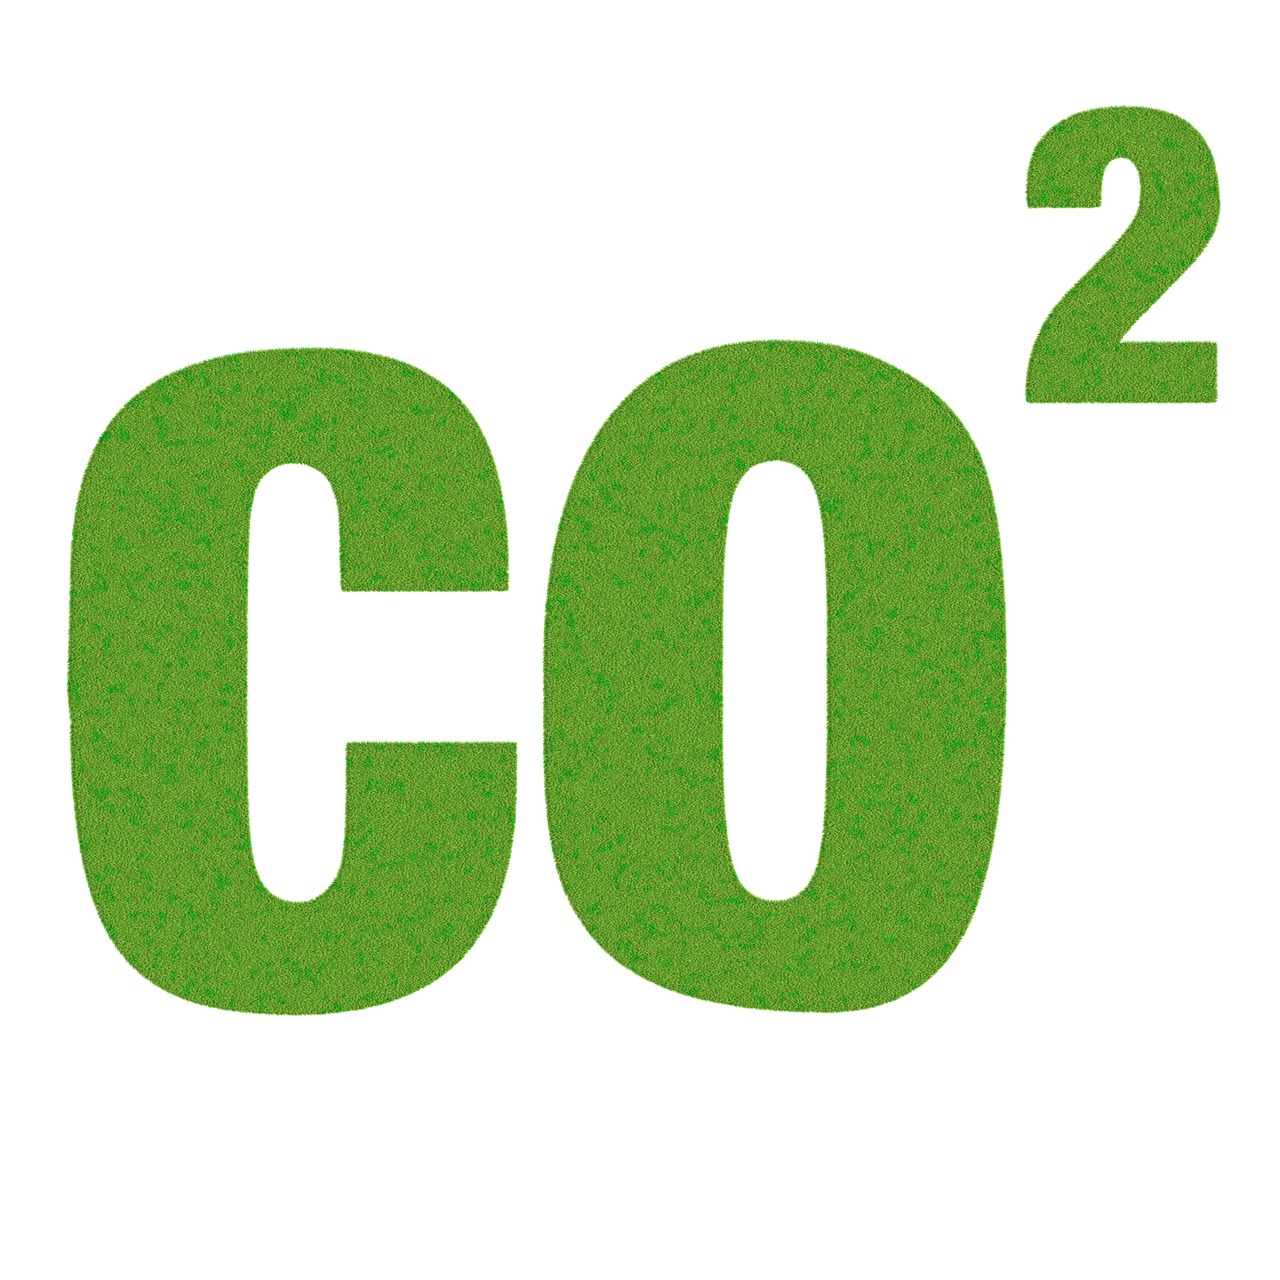 Co2, Pasaulinis Atšilimas, Visuotinis, Atšilimas, Aplinka, Tarša, Dioksidas, Anglies, Dujos, Klimatas